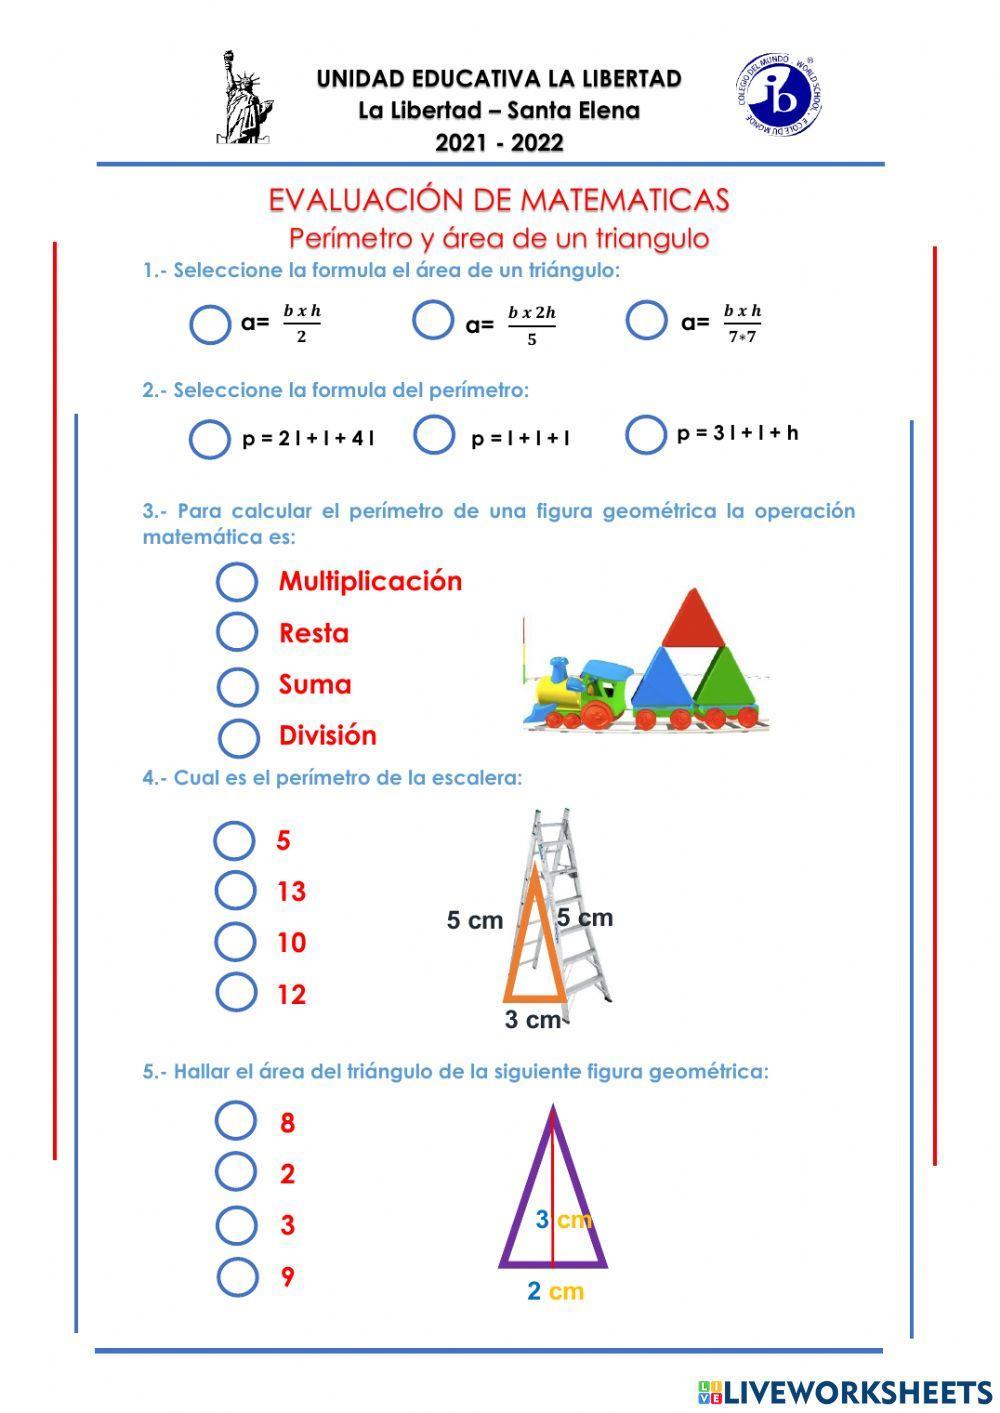 Perímetro y áreas de un triangulo